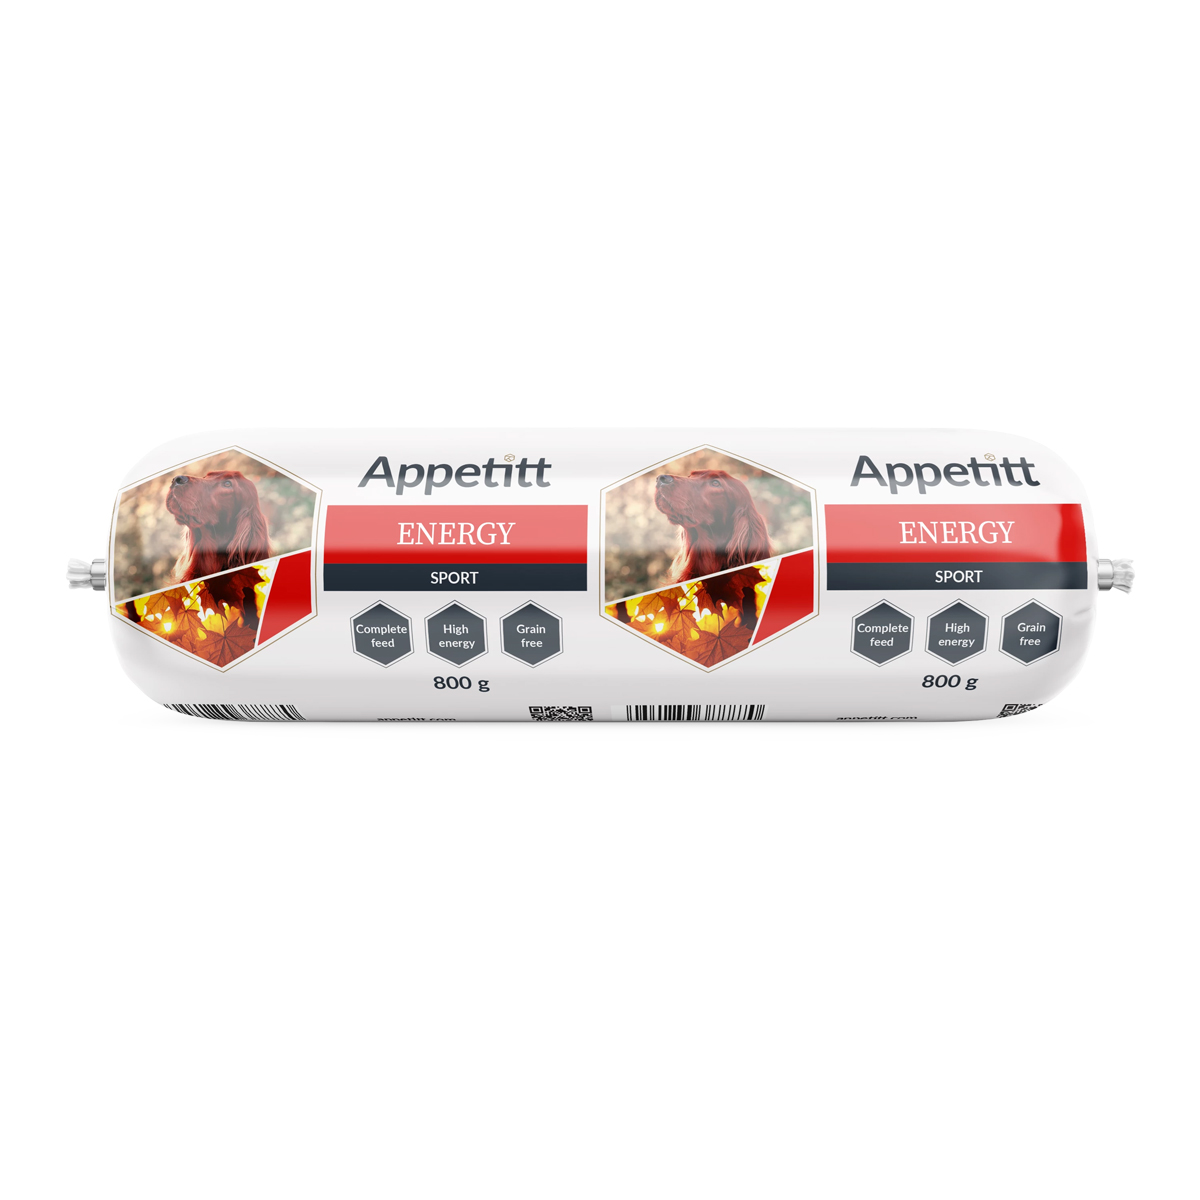 Image of Appetitt Plse Energy Sport 800g